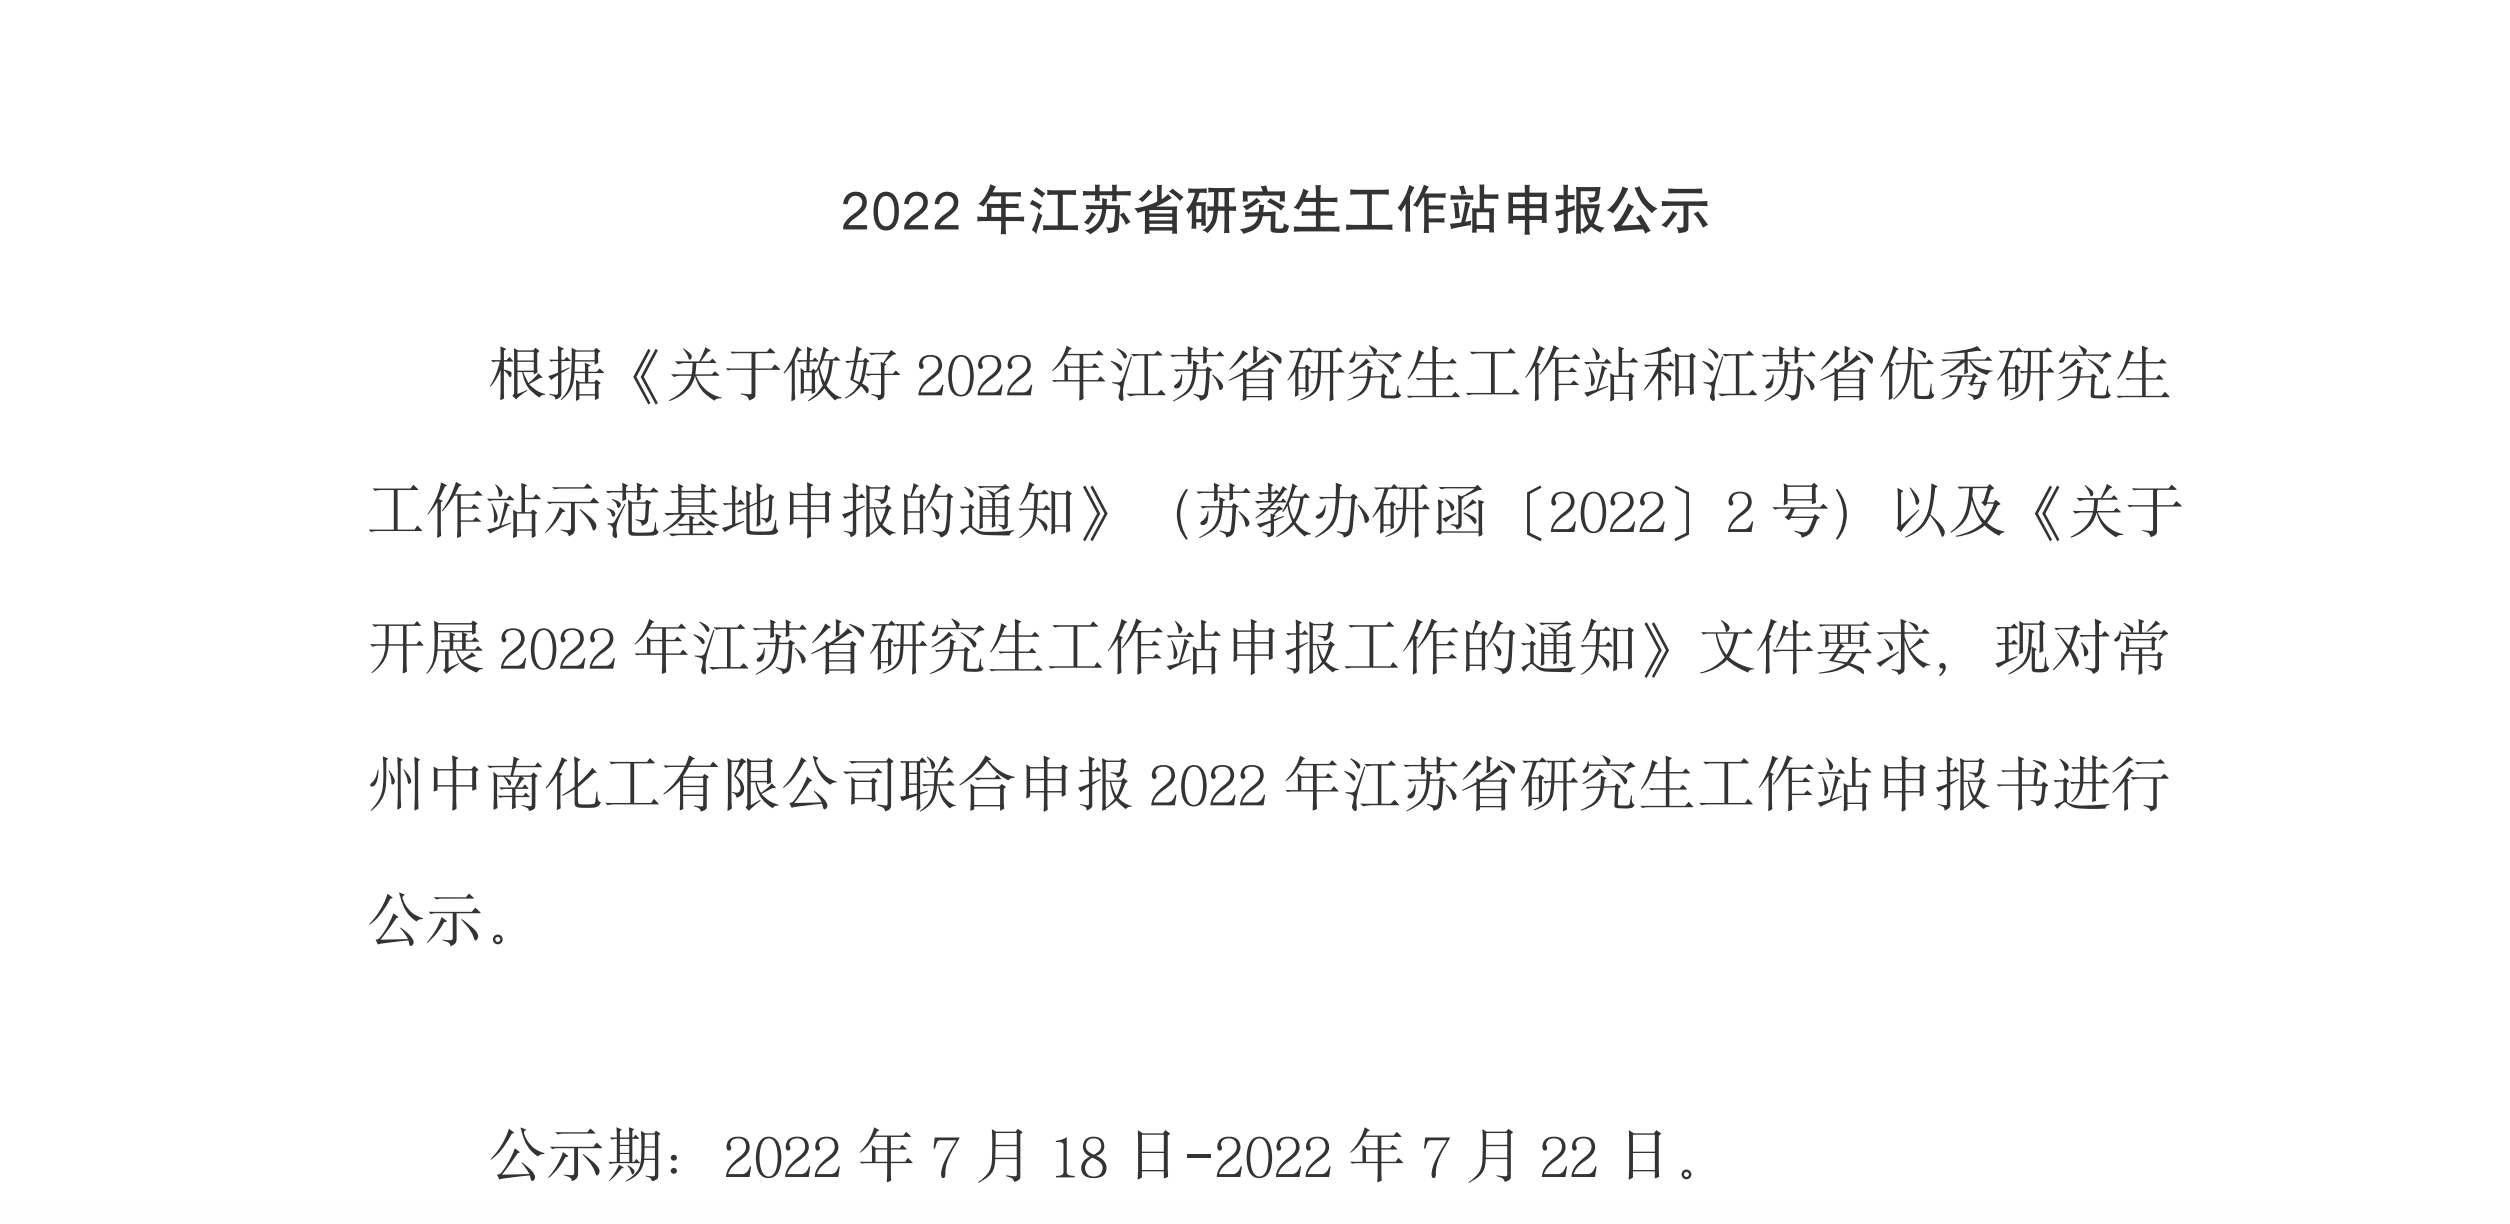 2022年江苏省研究生工作站申报公示公示期：2022年7月18日-2022年7月22日